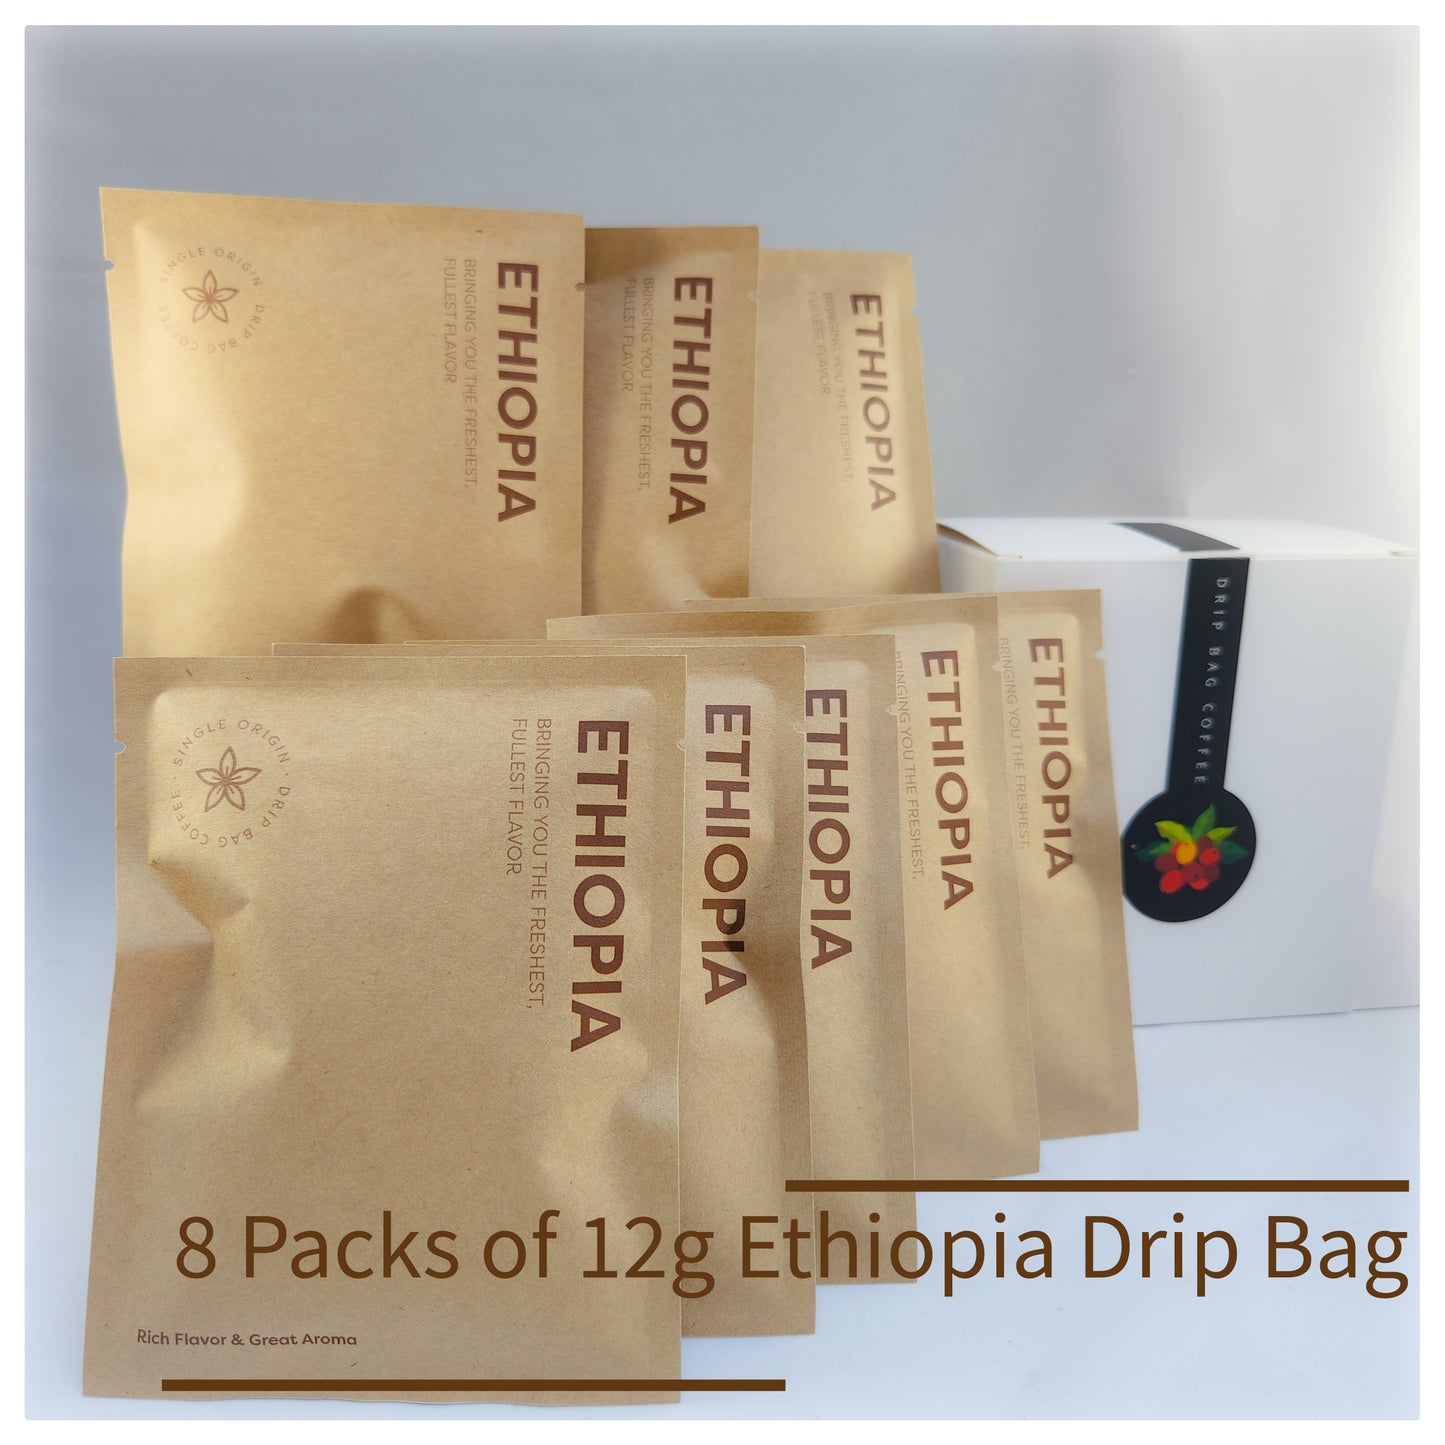 ETHIOPIA DRIP BAG